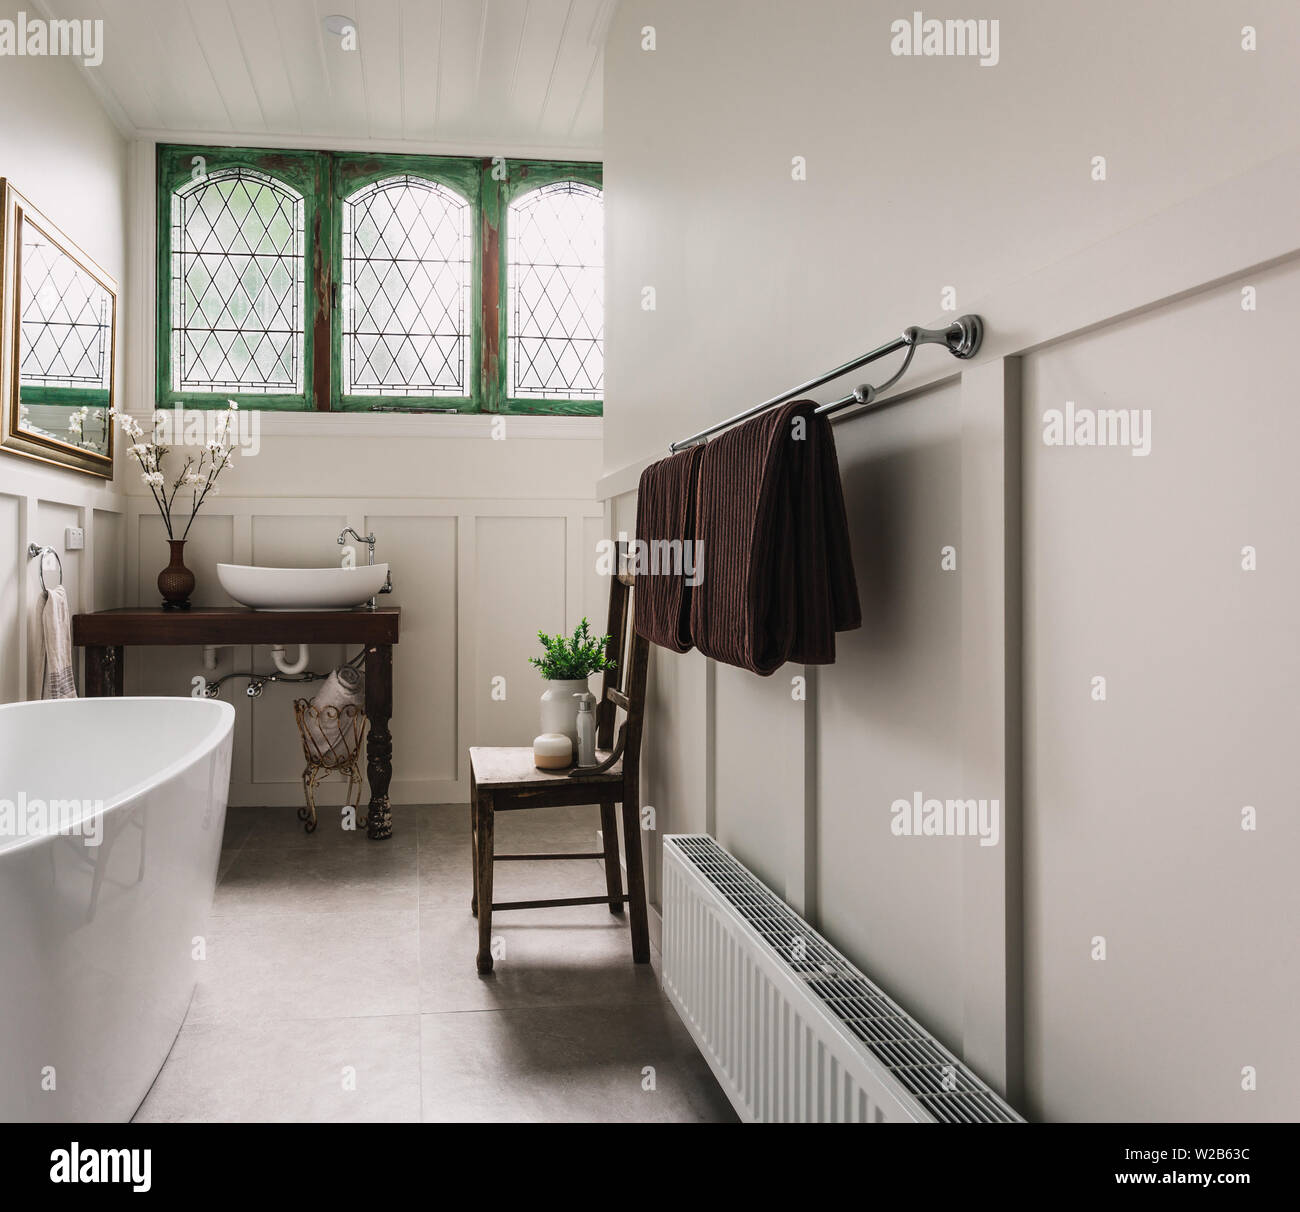 Land Bad mit Badewanne, Gold, Spiegel, grünen historischen Doppel casement Scheinwerfer Fenster Stockfoto